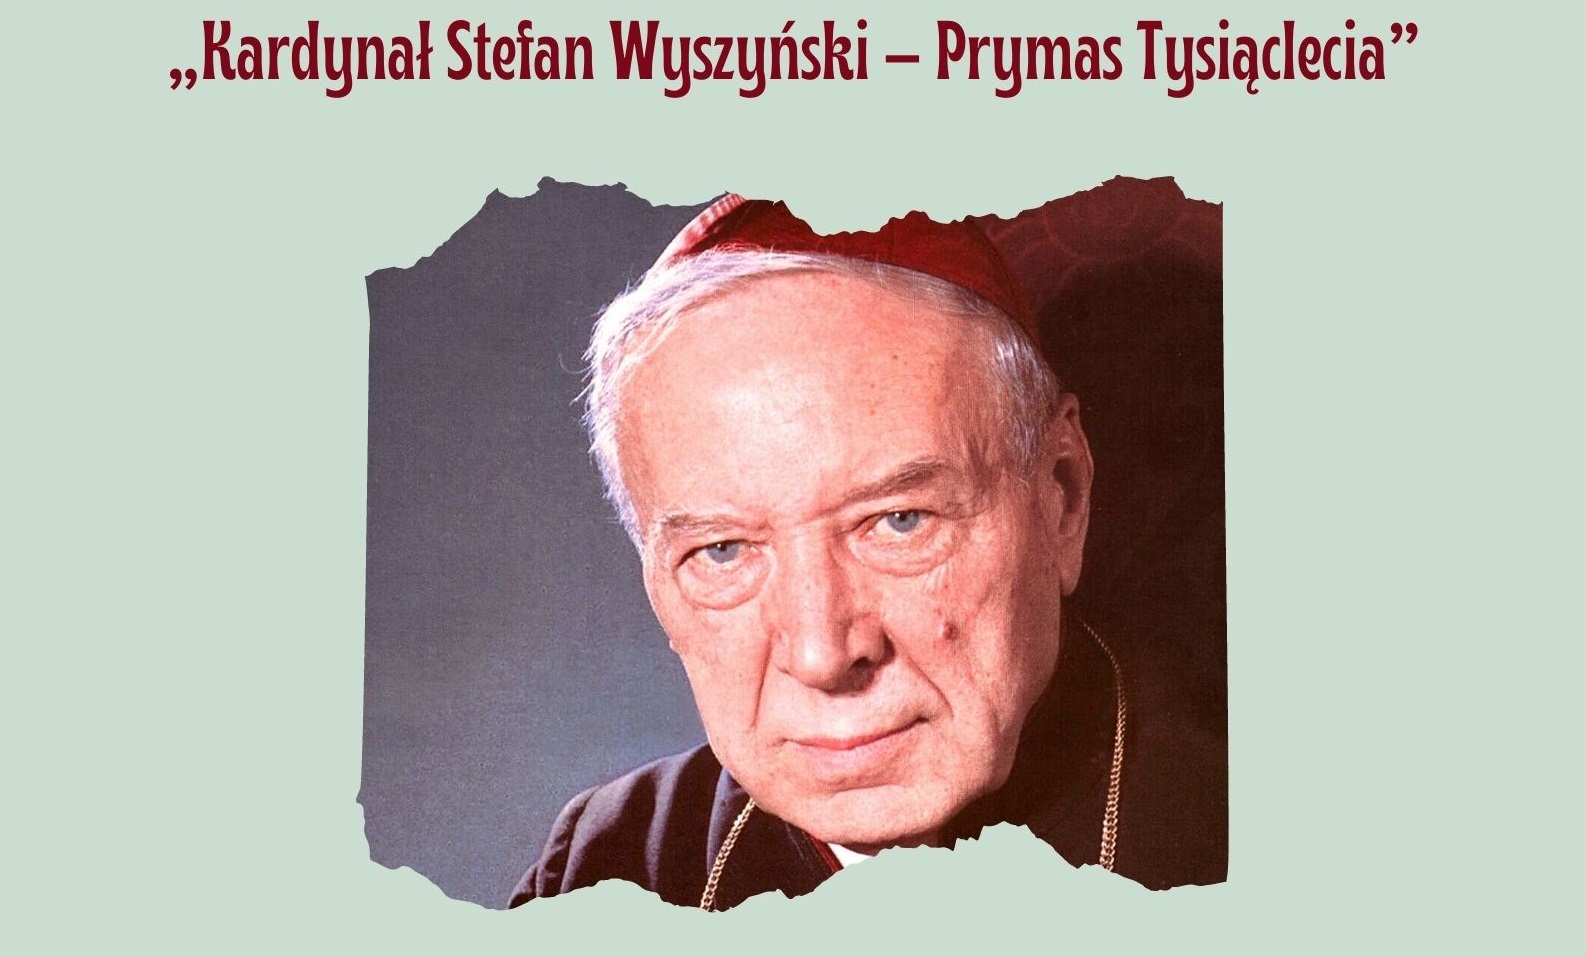 Konkurs czytelniczo-prasowy o kardynale Wyszyńskim